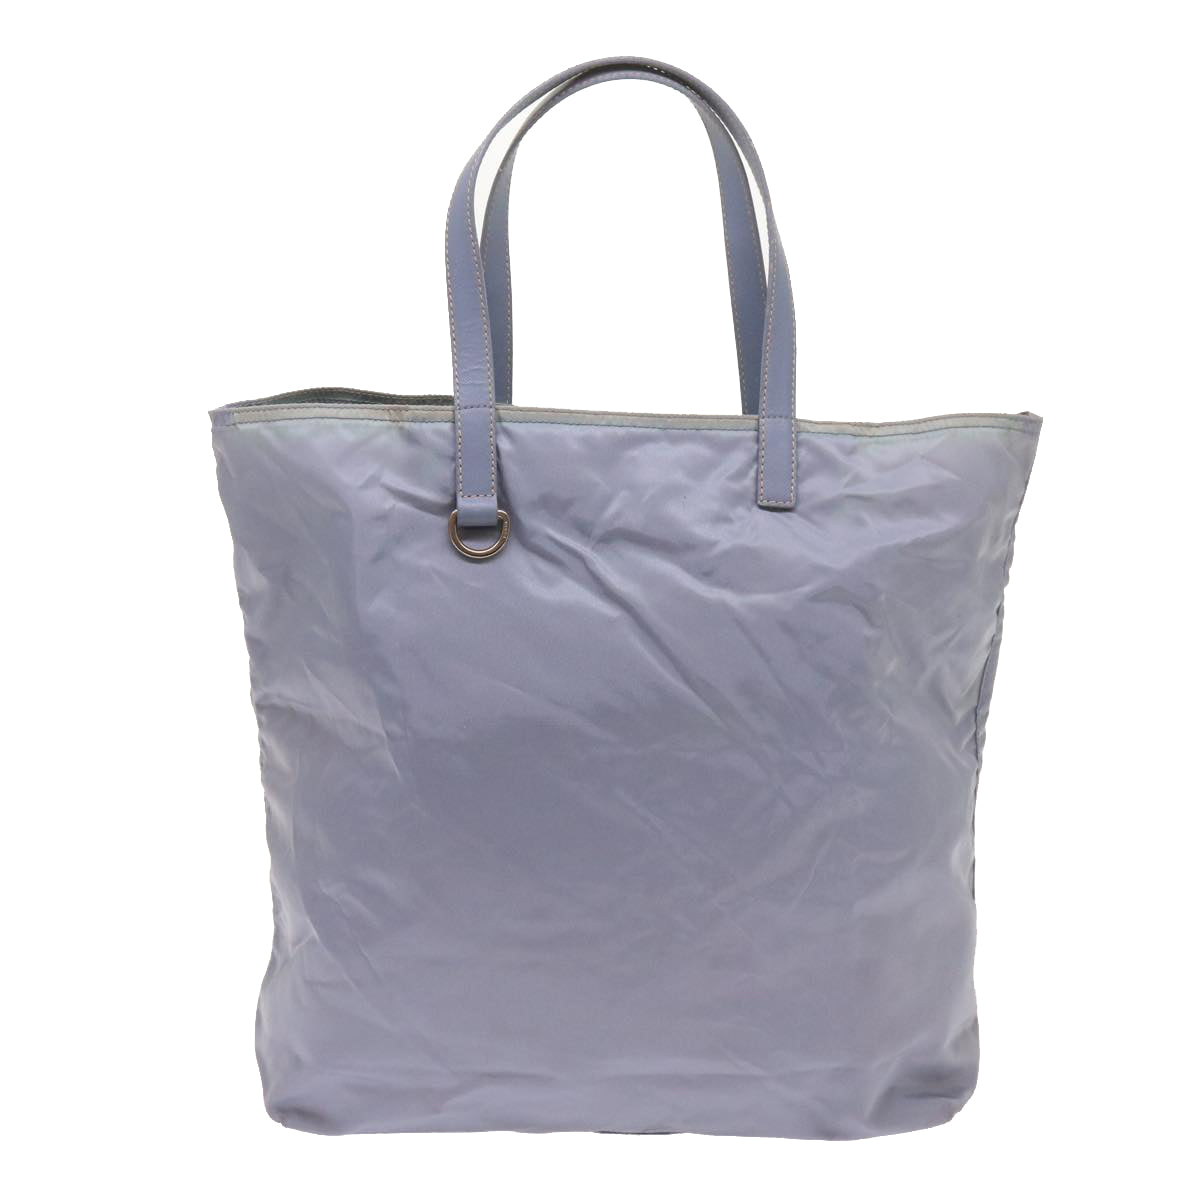 PRADA Tote Bag Nylon Light Blue Auth ac2744 - 0